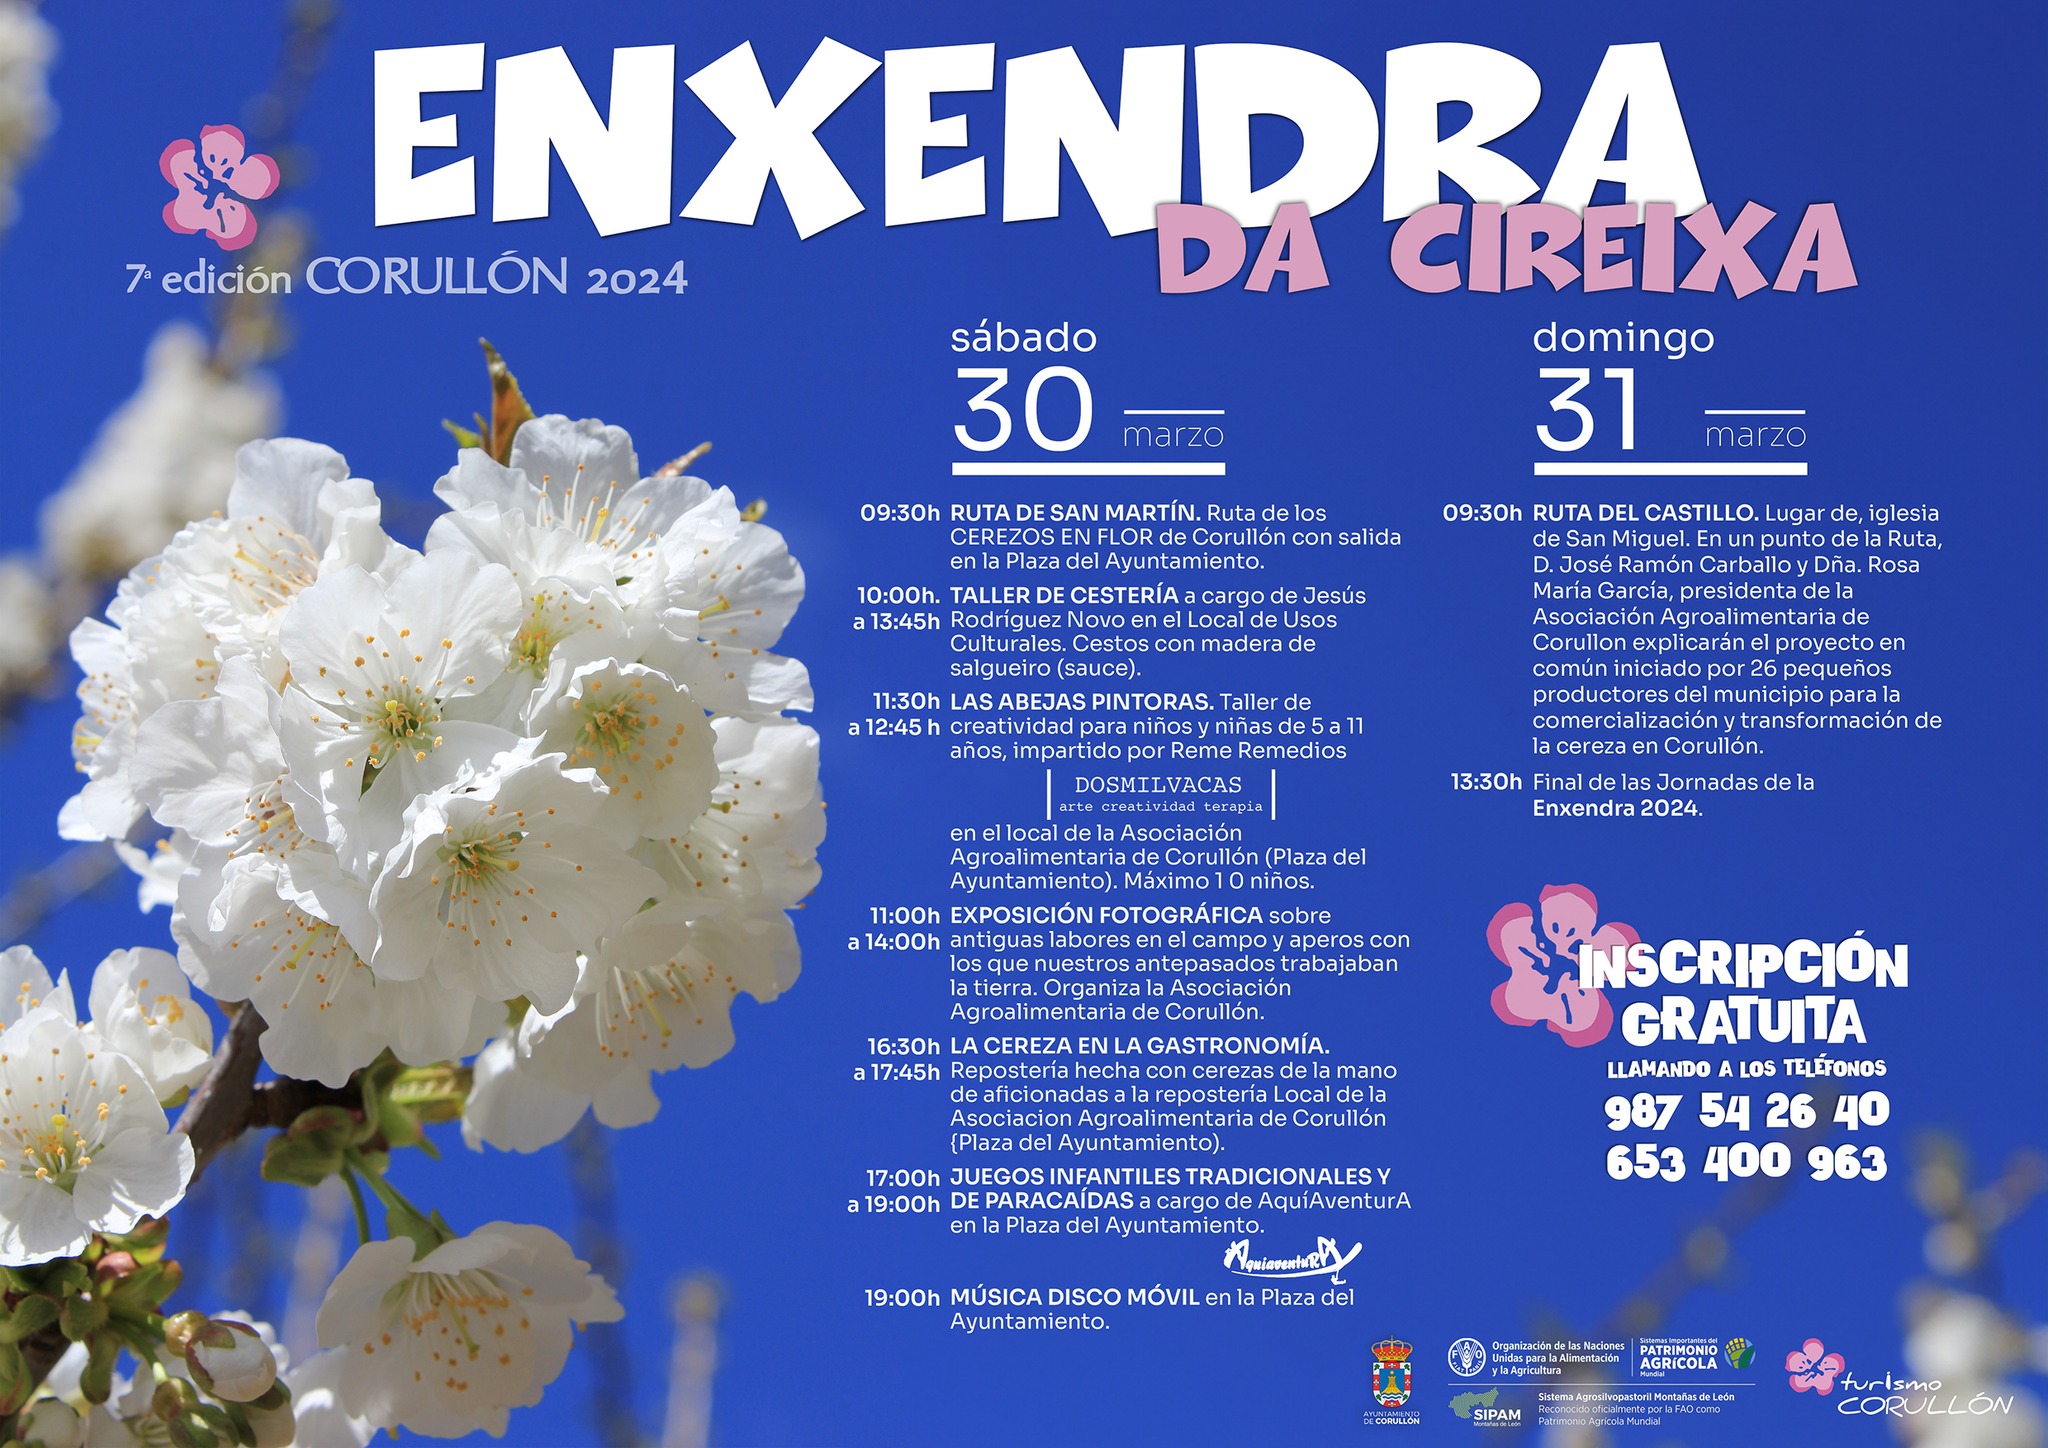 Corullón organiza un año más la 'Enxendra da Cireixa' con rutas, talleres, exposiciones y más actividades 3